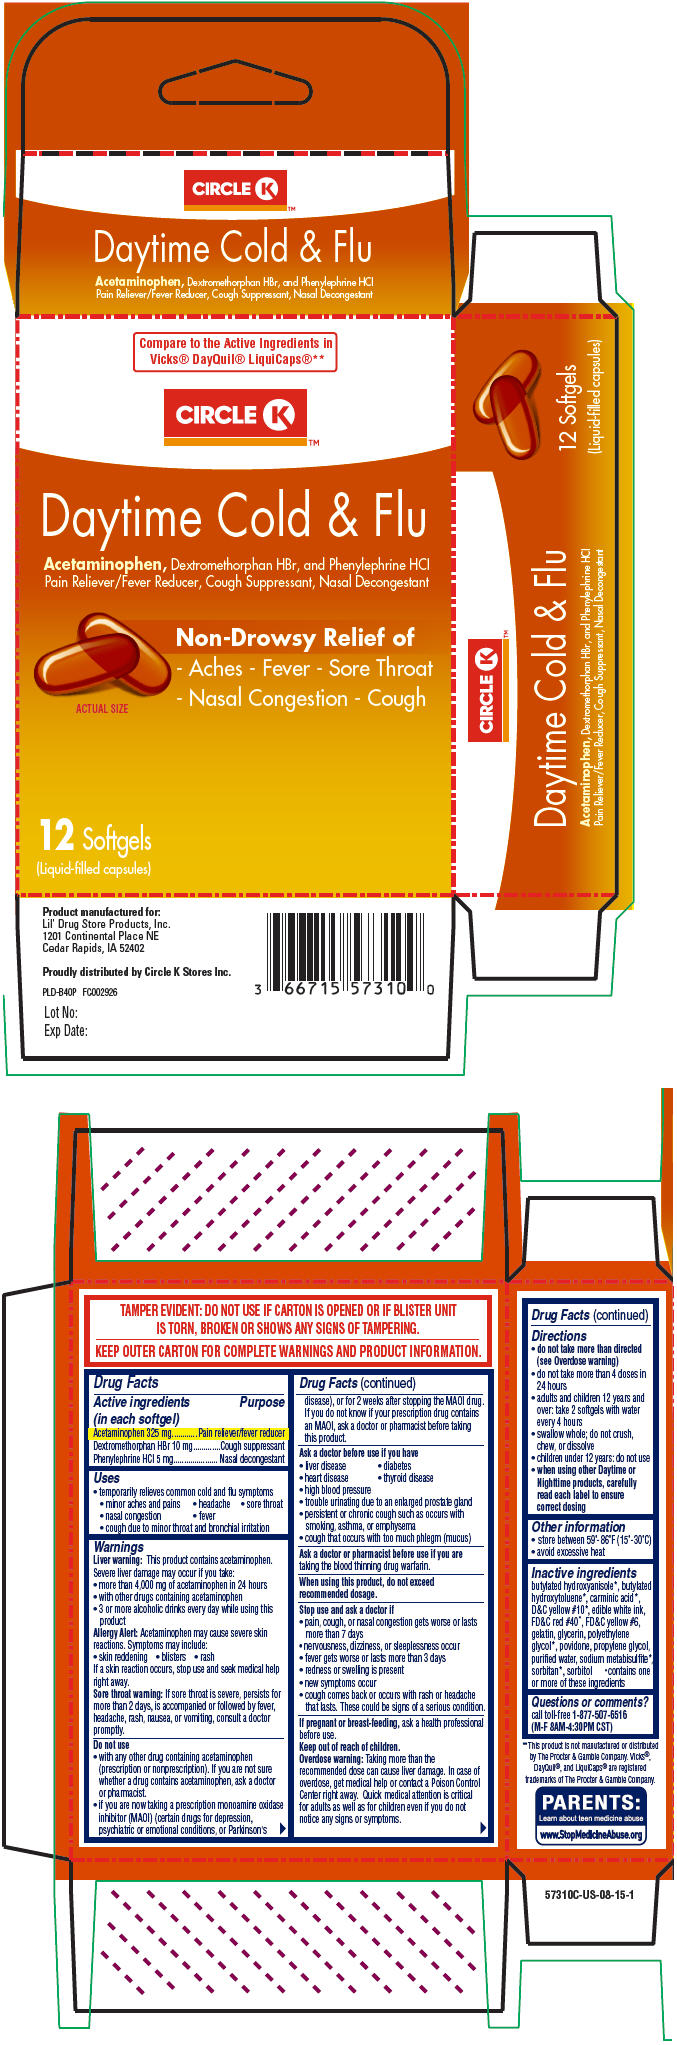 Principal Display Panel - 12 Capsule Blister Pack Carton - 5768